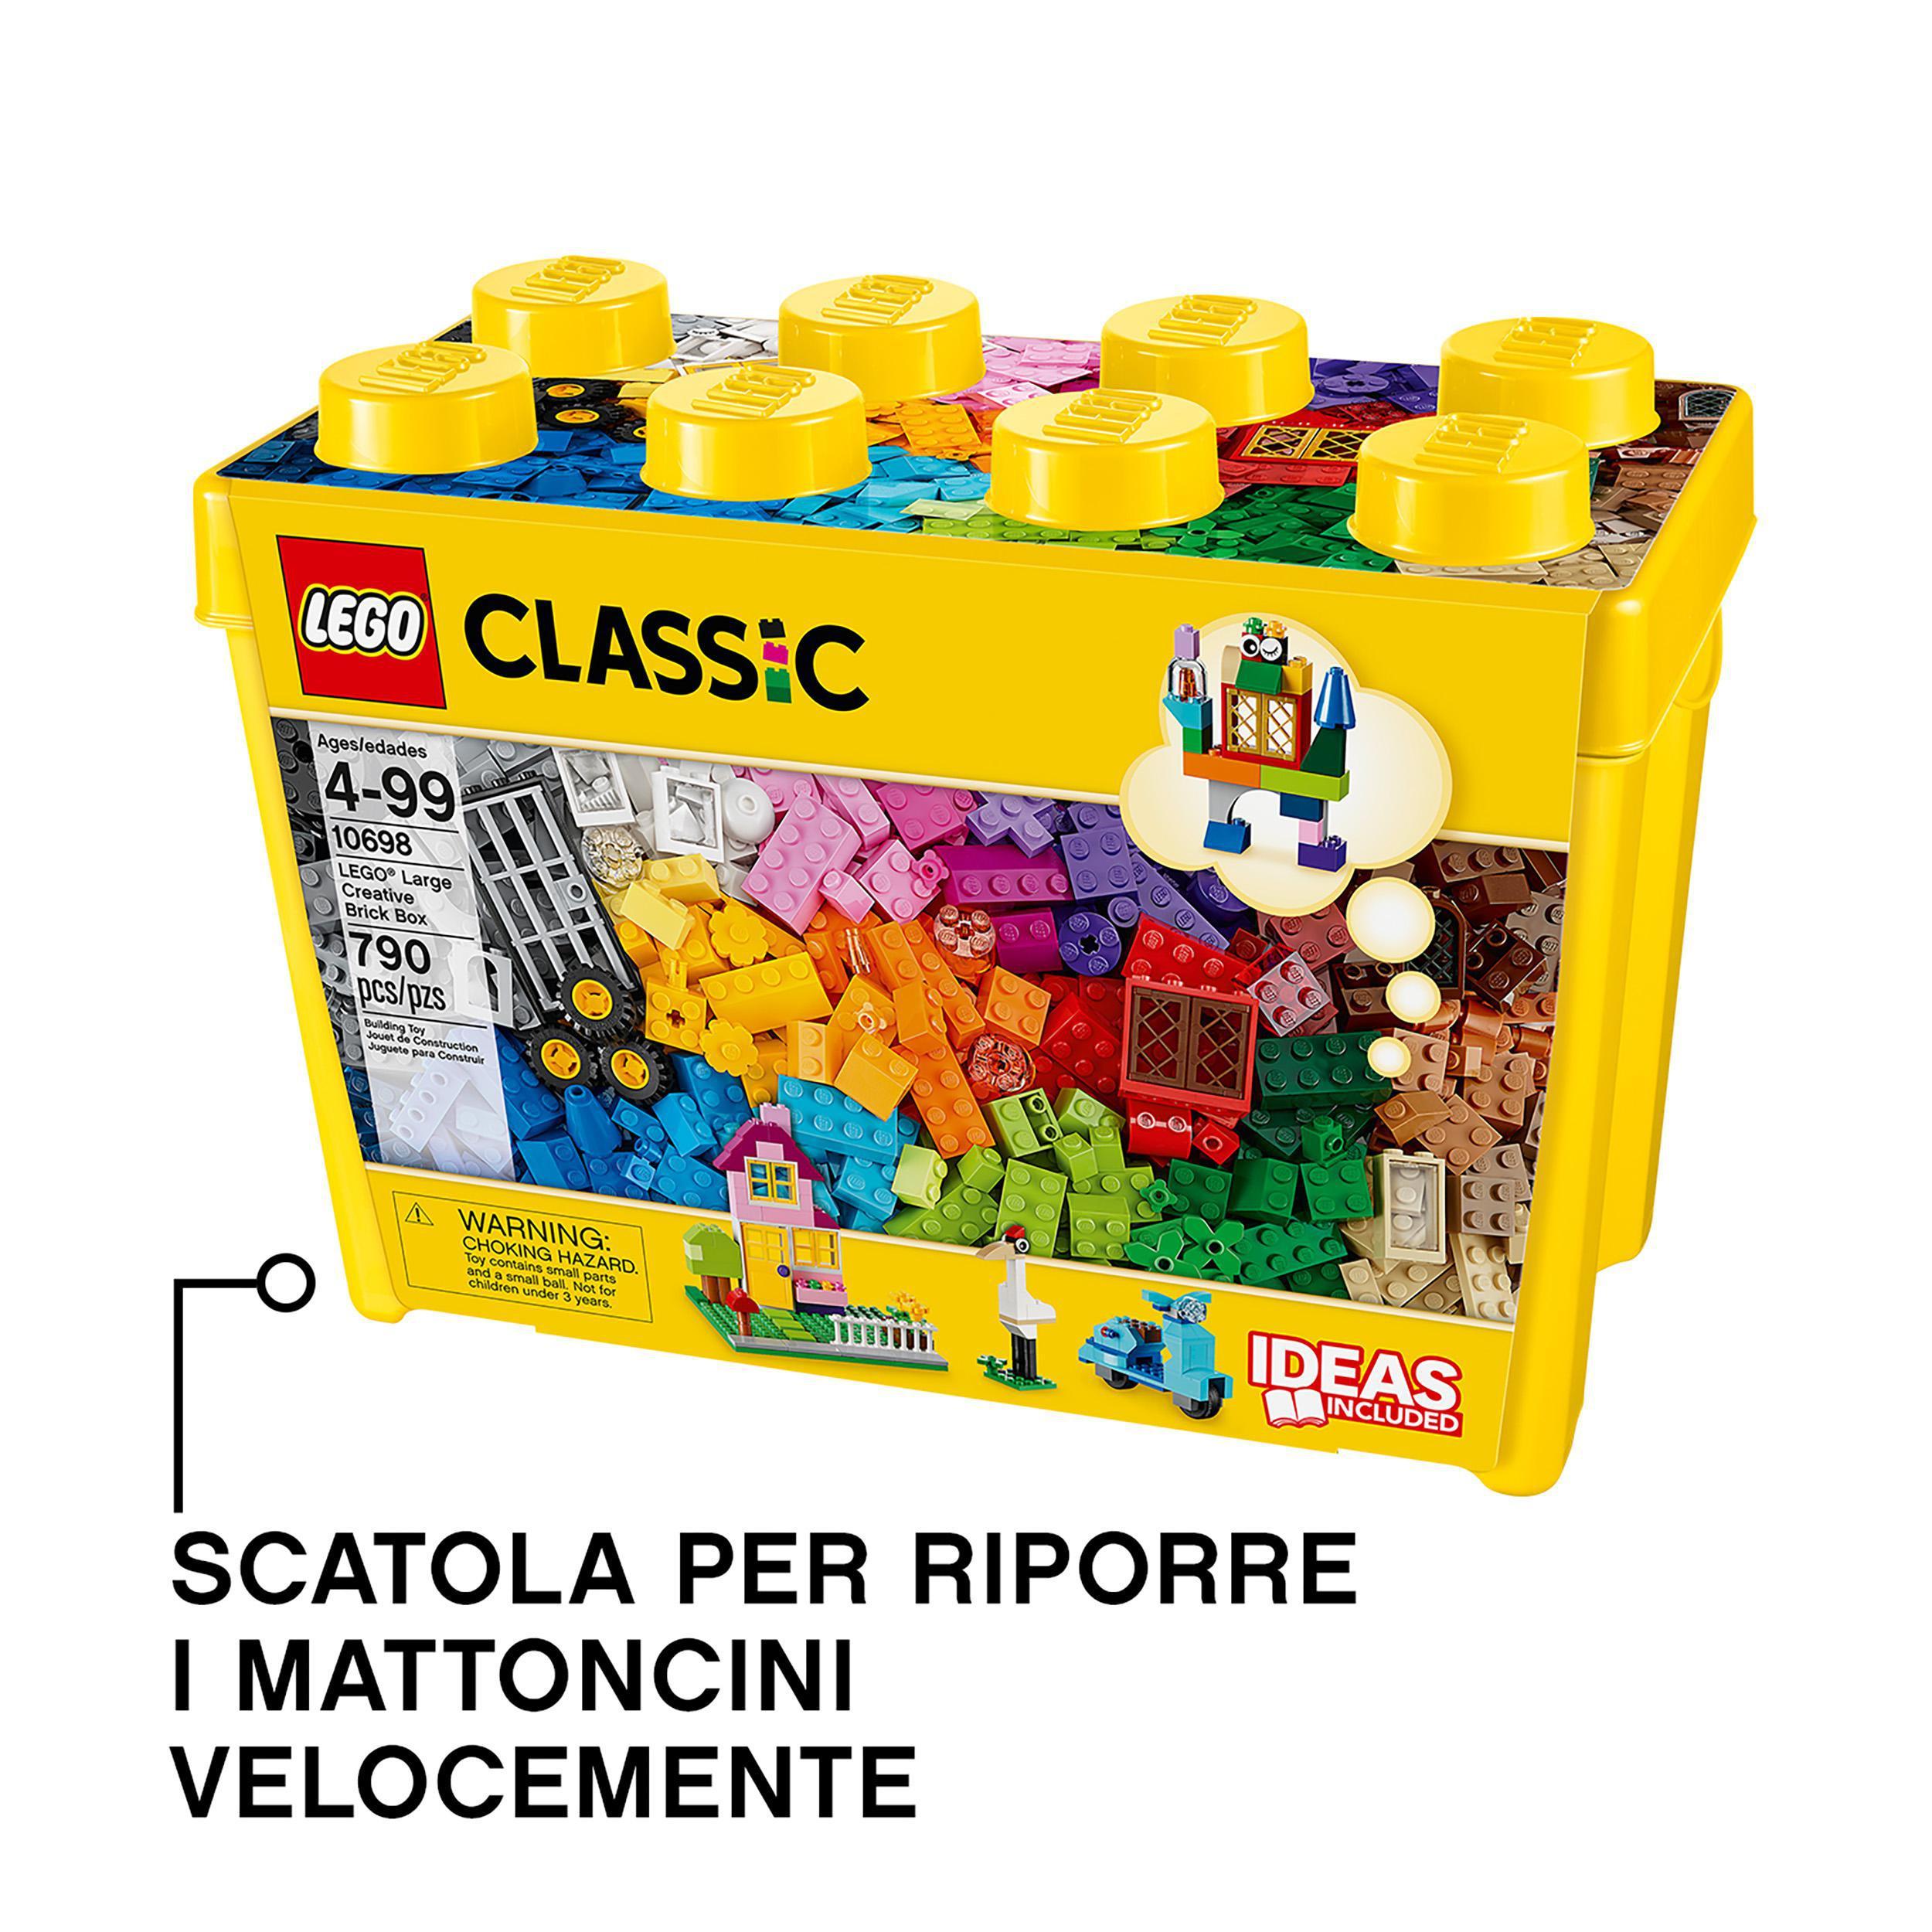 LEGO Classic 10698 - Scatola Mattoncini creativi Grande a € 44,40 (oggi)